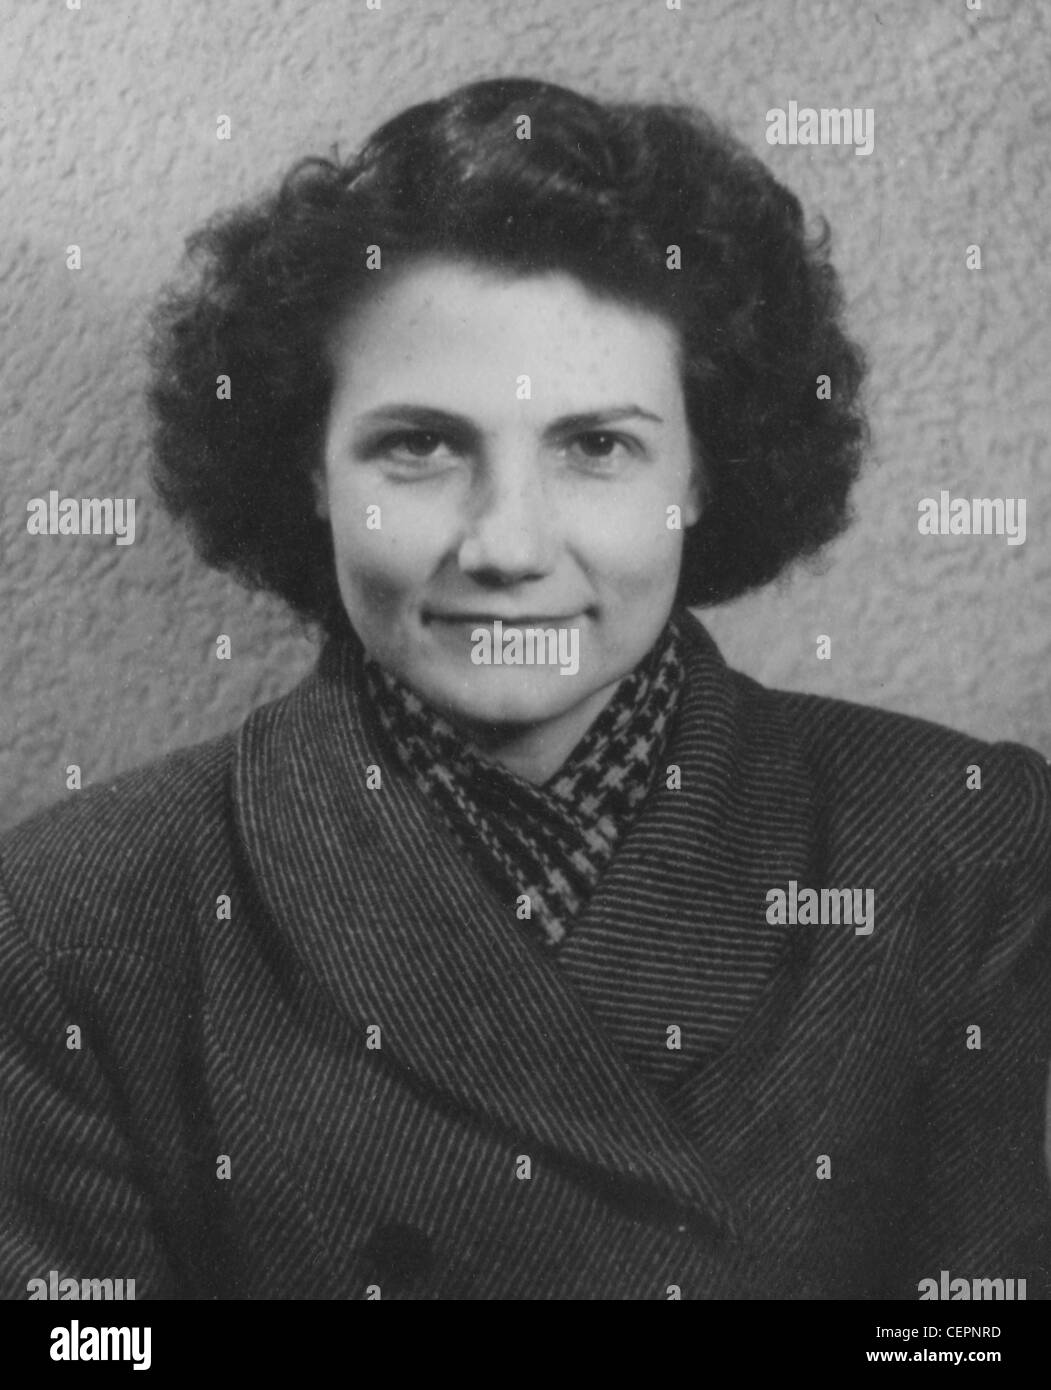 Archives Photos : photo d'une femme de style passeport (c1945) Banque D'Images